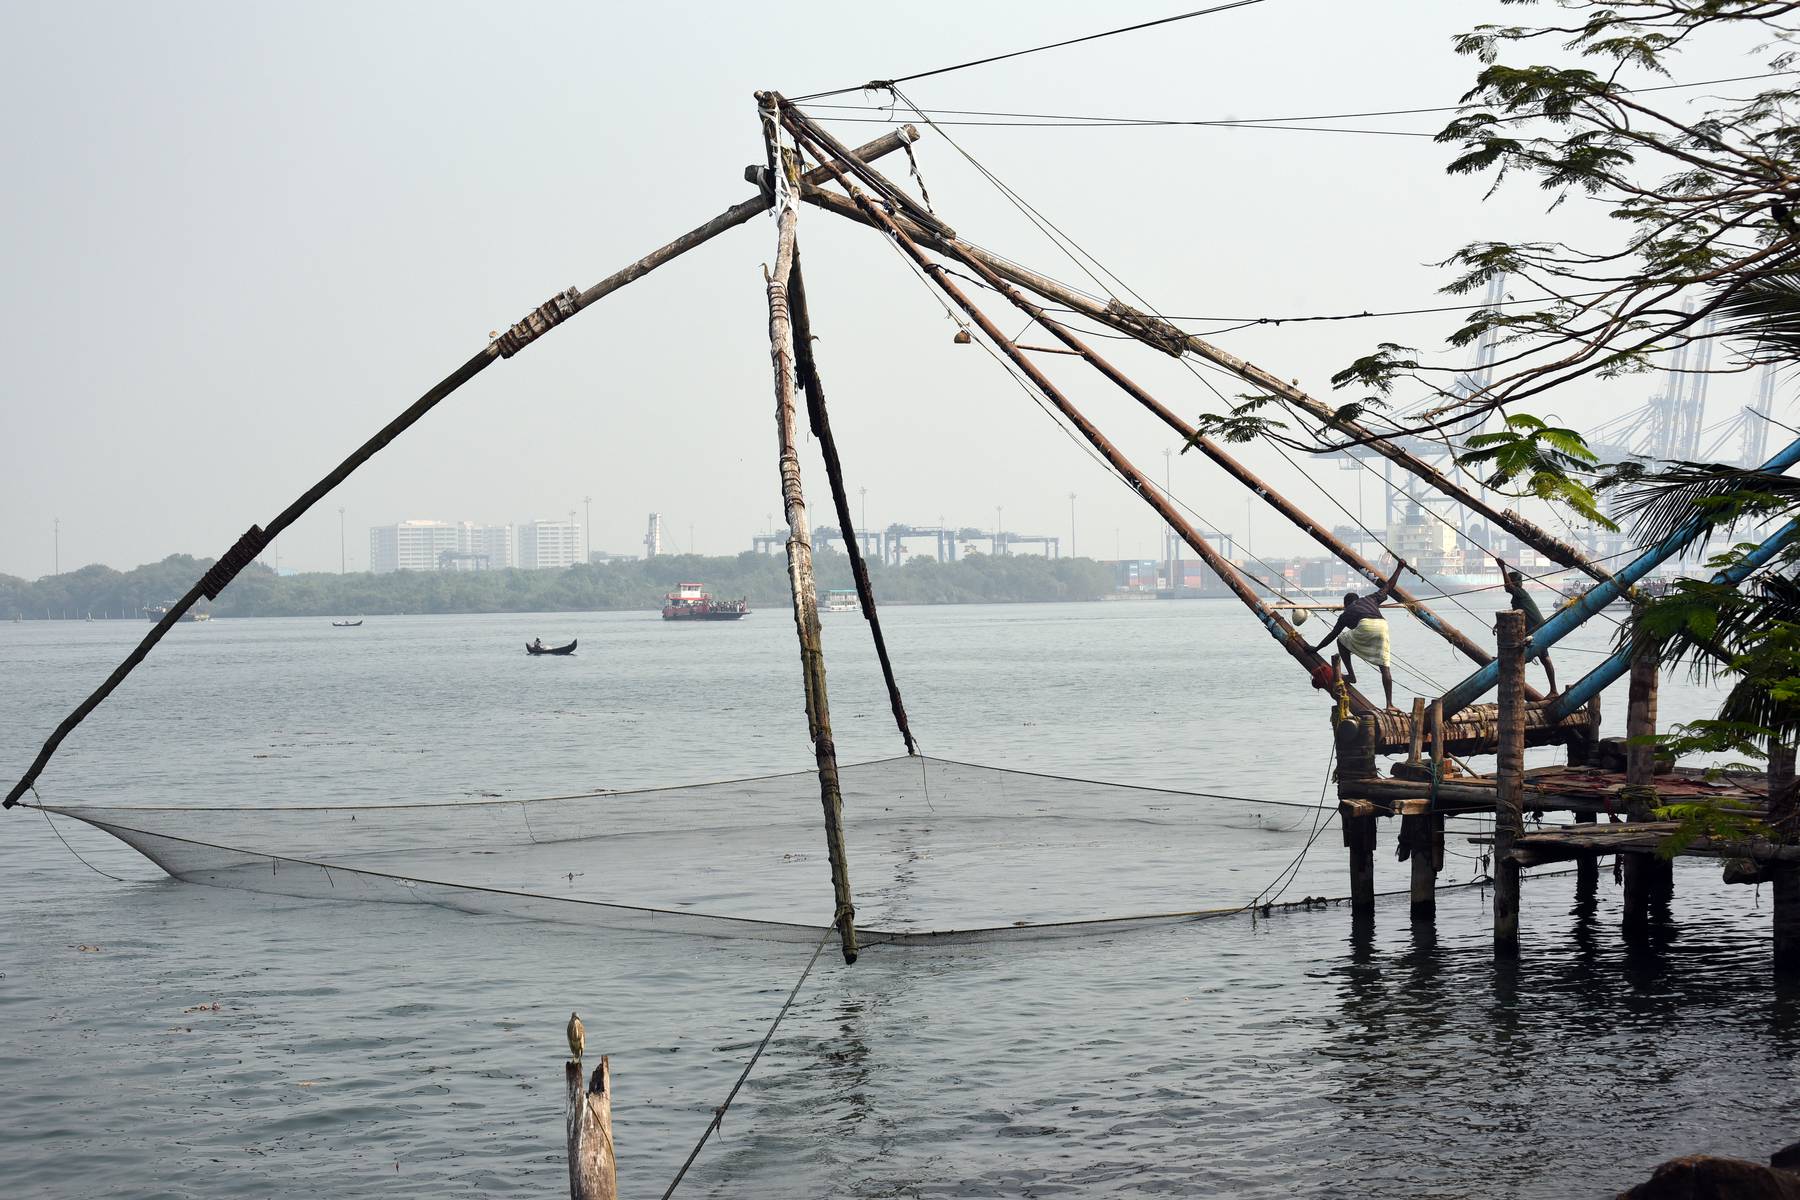 Prova på att fiska med kinesiska fiskenät i Kochi